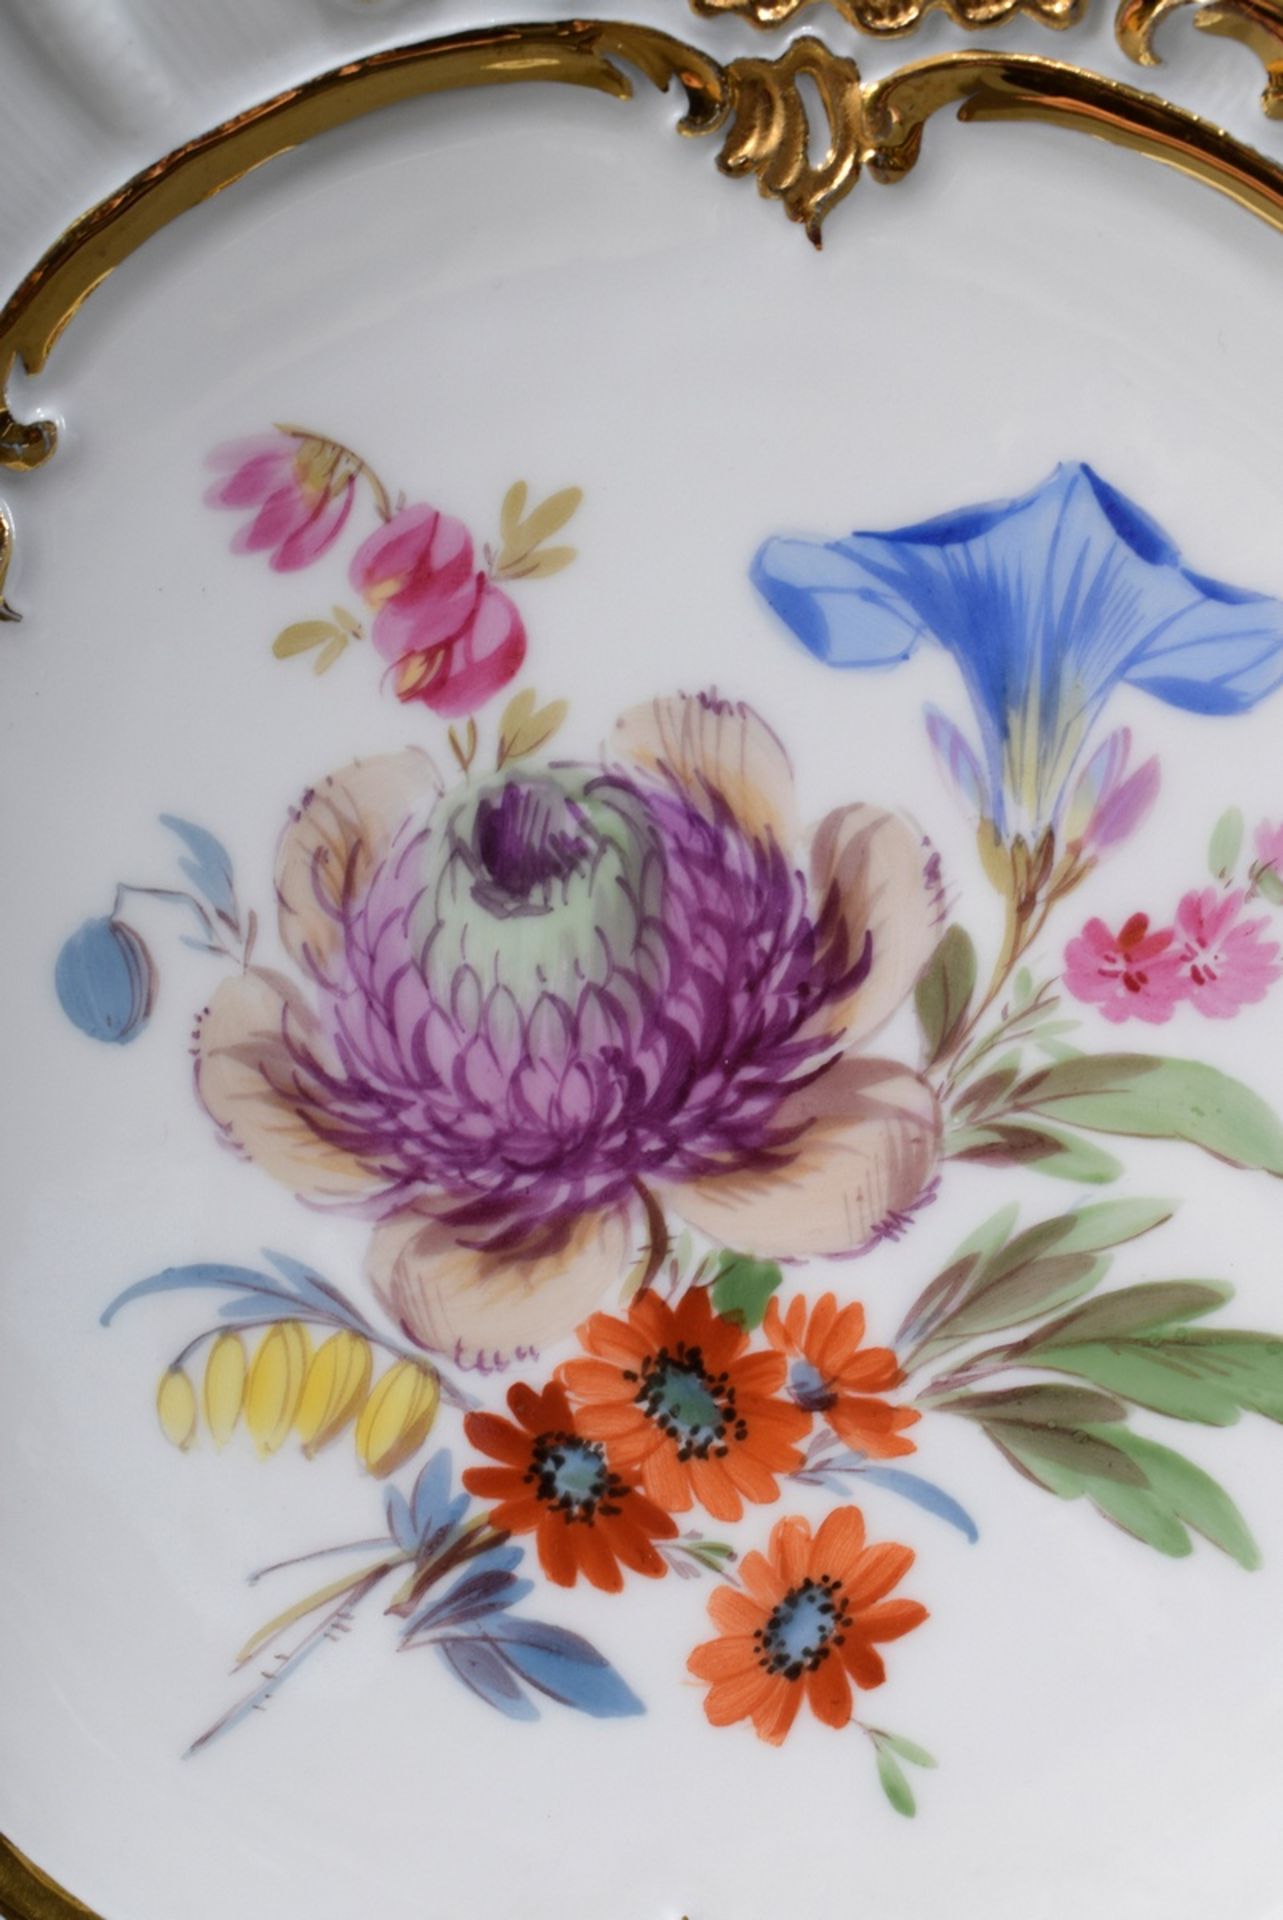 Meissen Prunkteller mit polychromer Blumenmalere | Meissen show plate with polychrome floral painti - Bild 5 aus 5